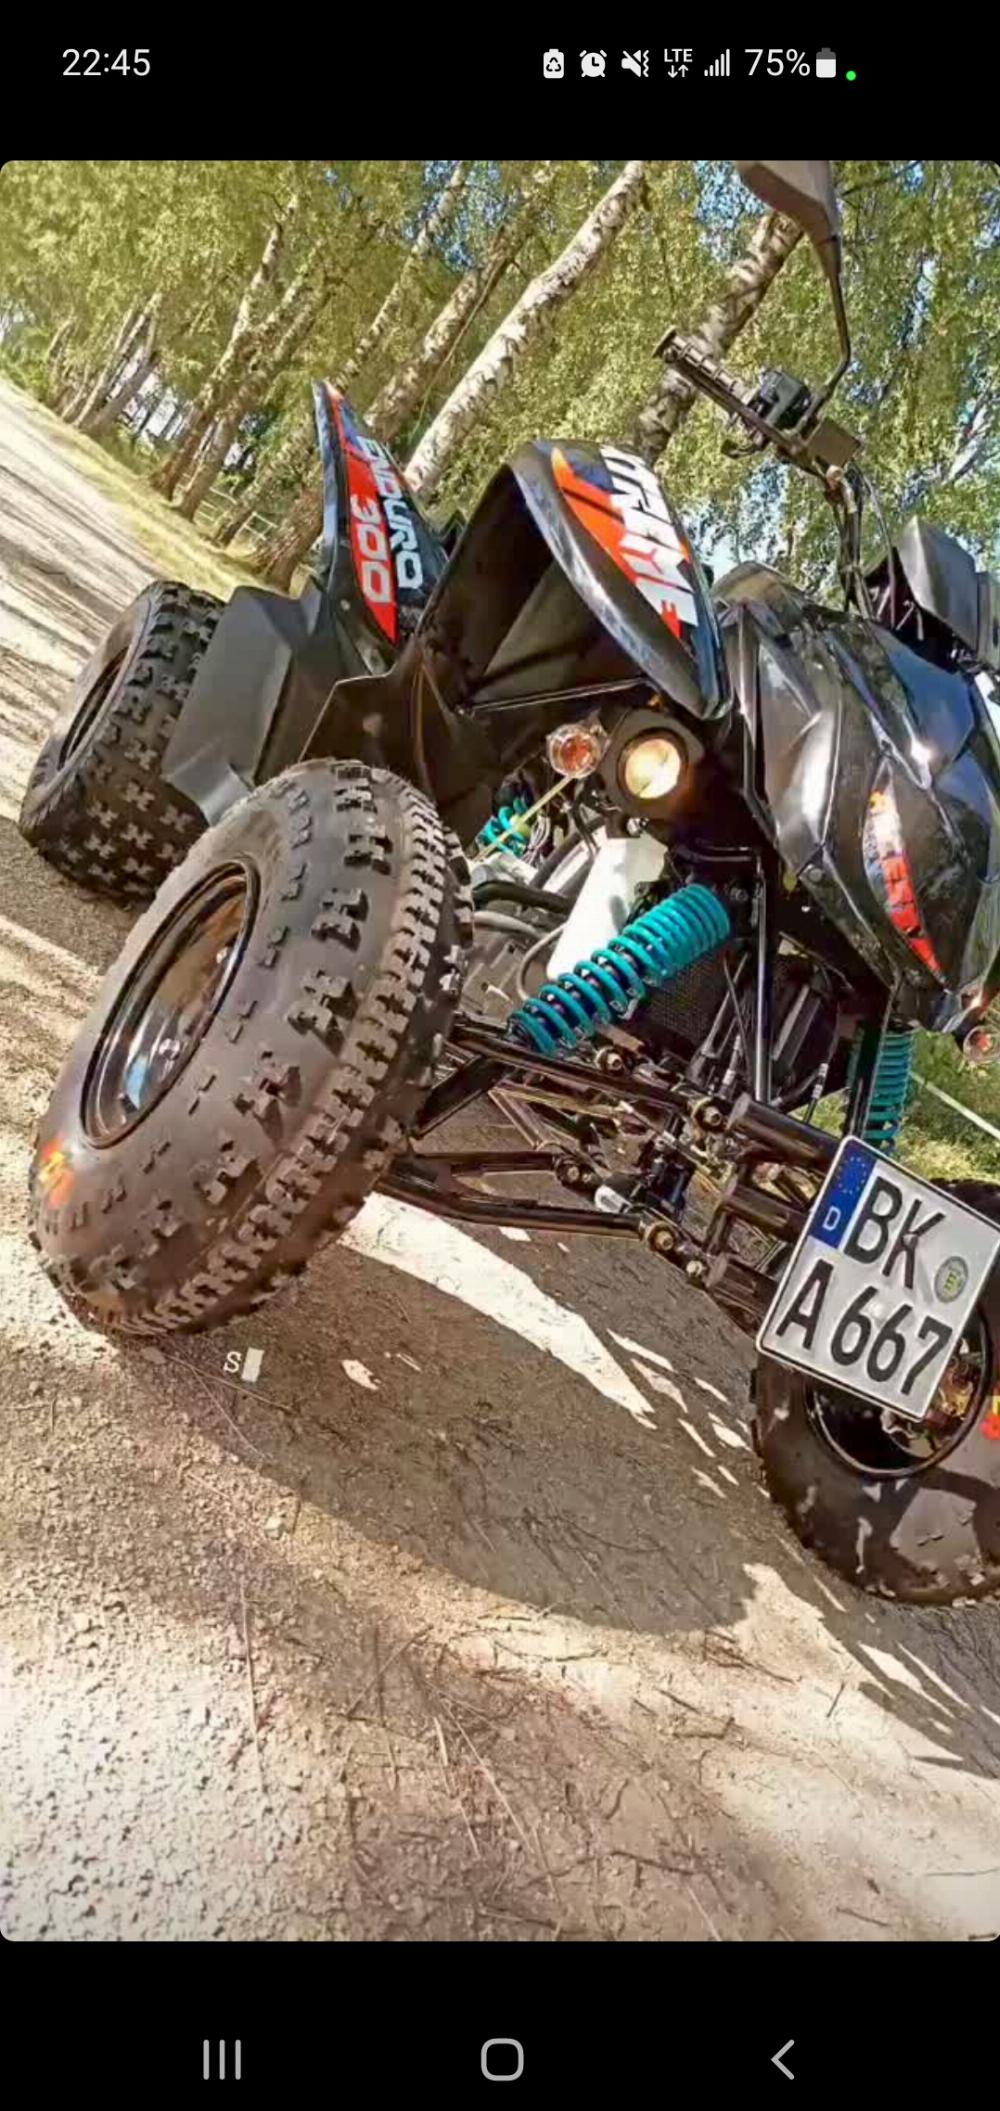 Motorrad verkaufen Access Motor Xtreme X 300 Enduro  Ankauf